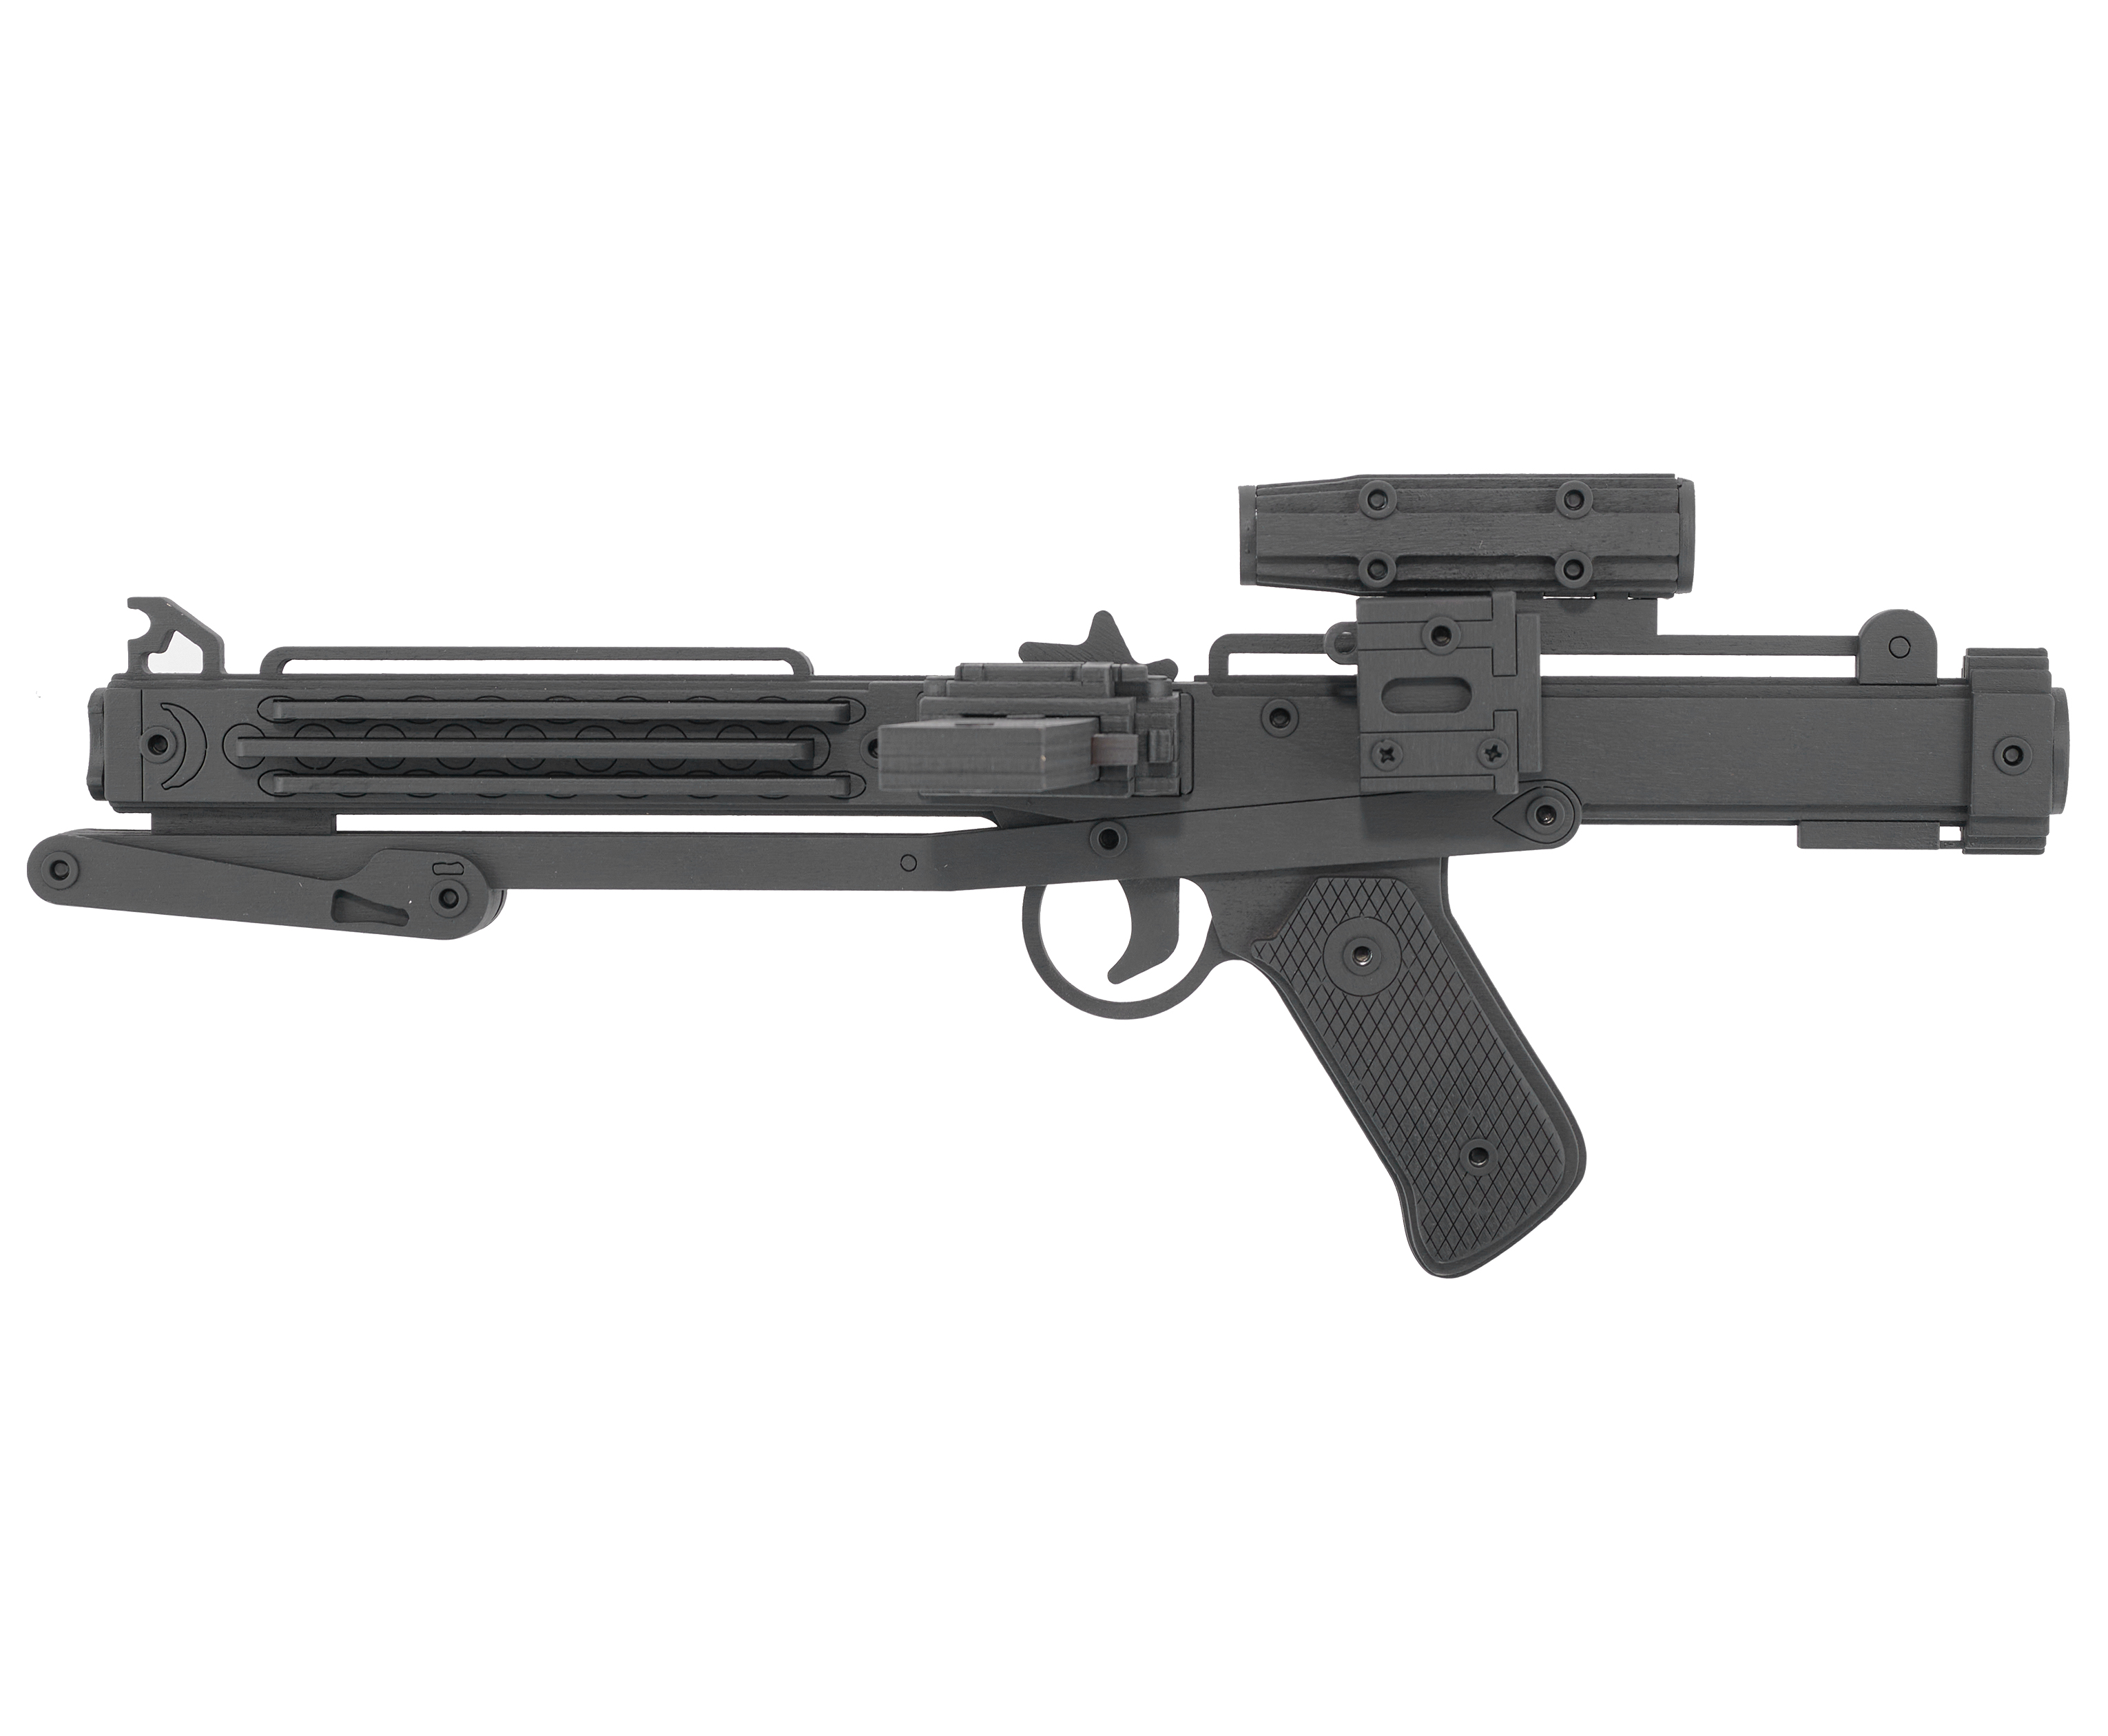 Резинкострел игрушечный Arma toys лазерная винтовка E-11 макет, Star Wars, AT011 резинкострел arma toys пистолет glock light макет глок 26 at027 окрашенный